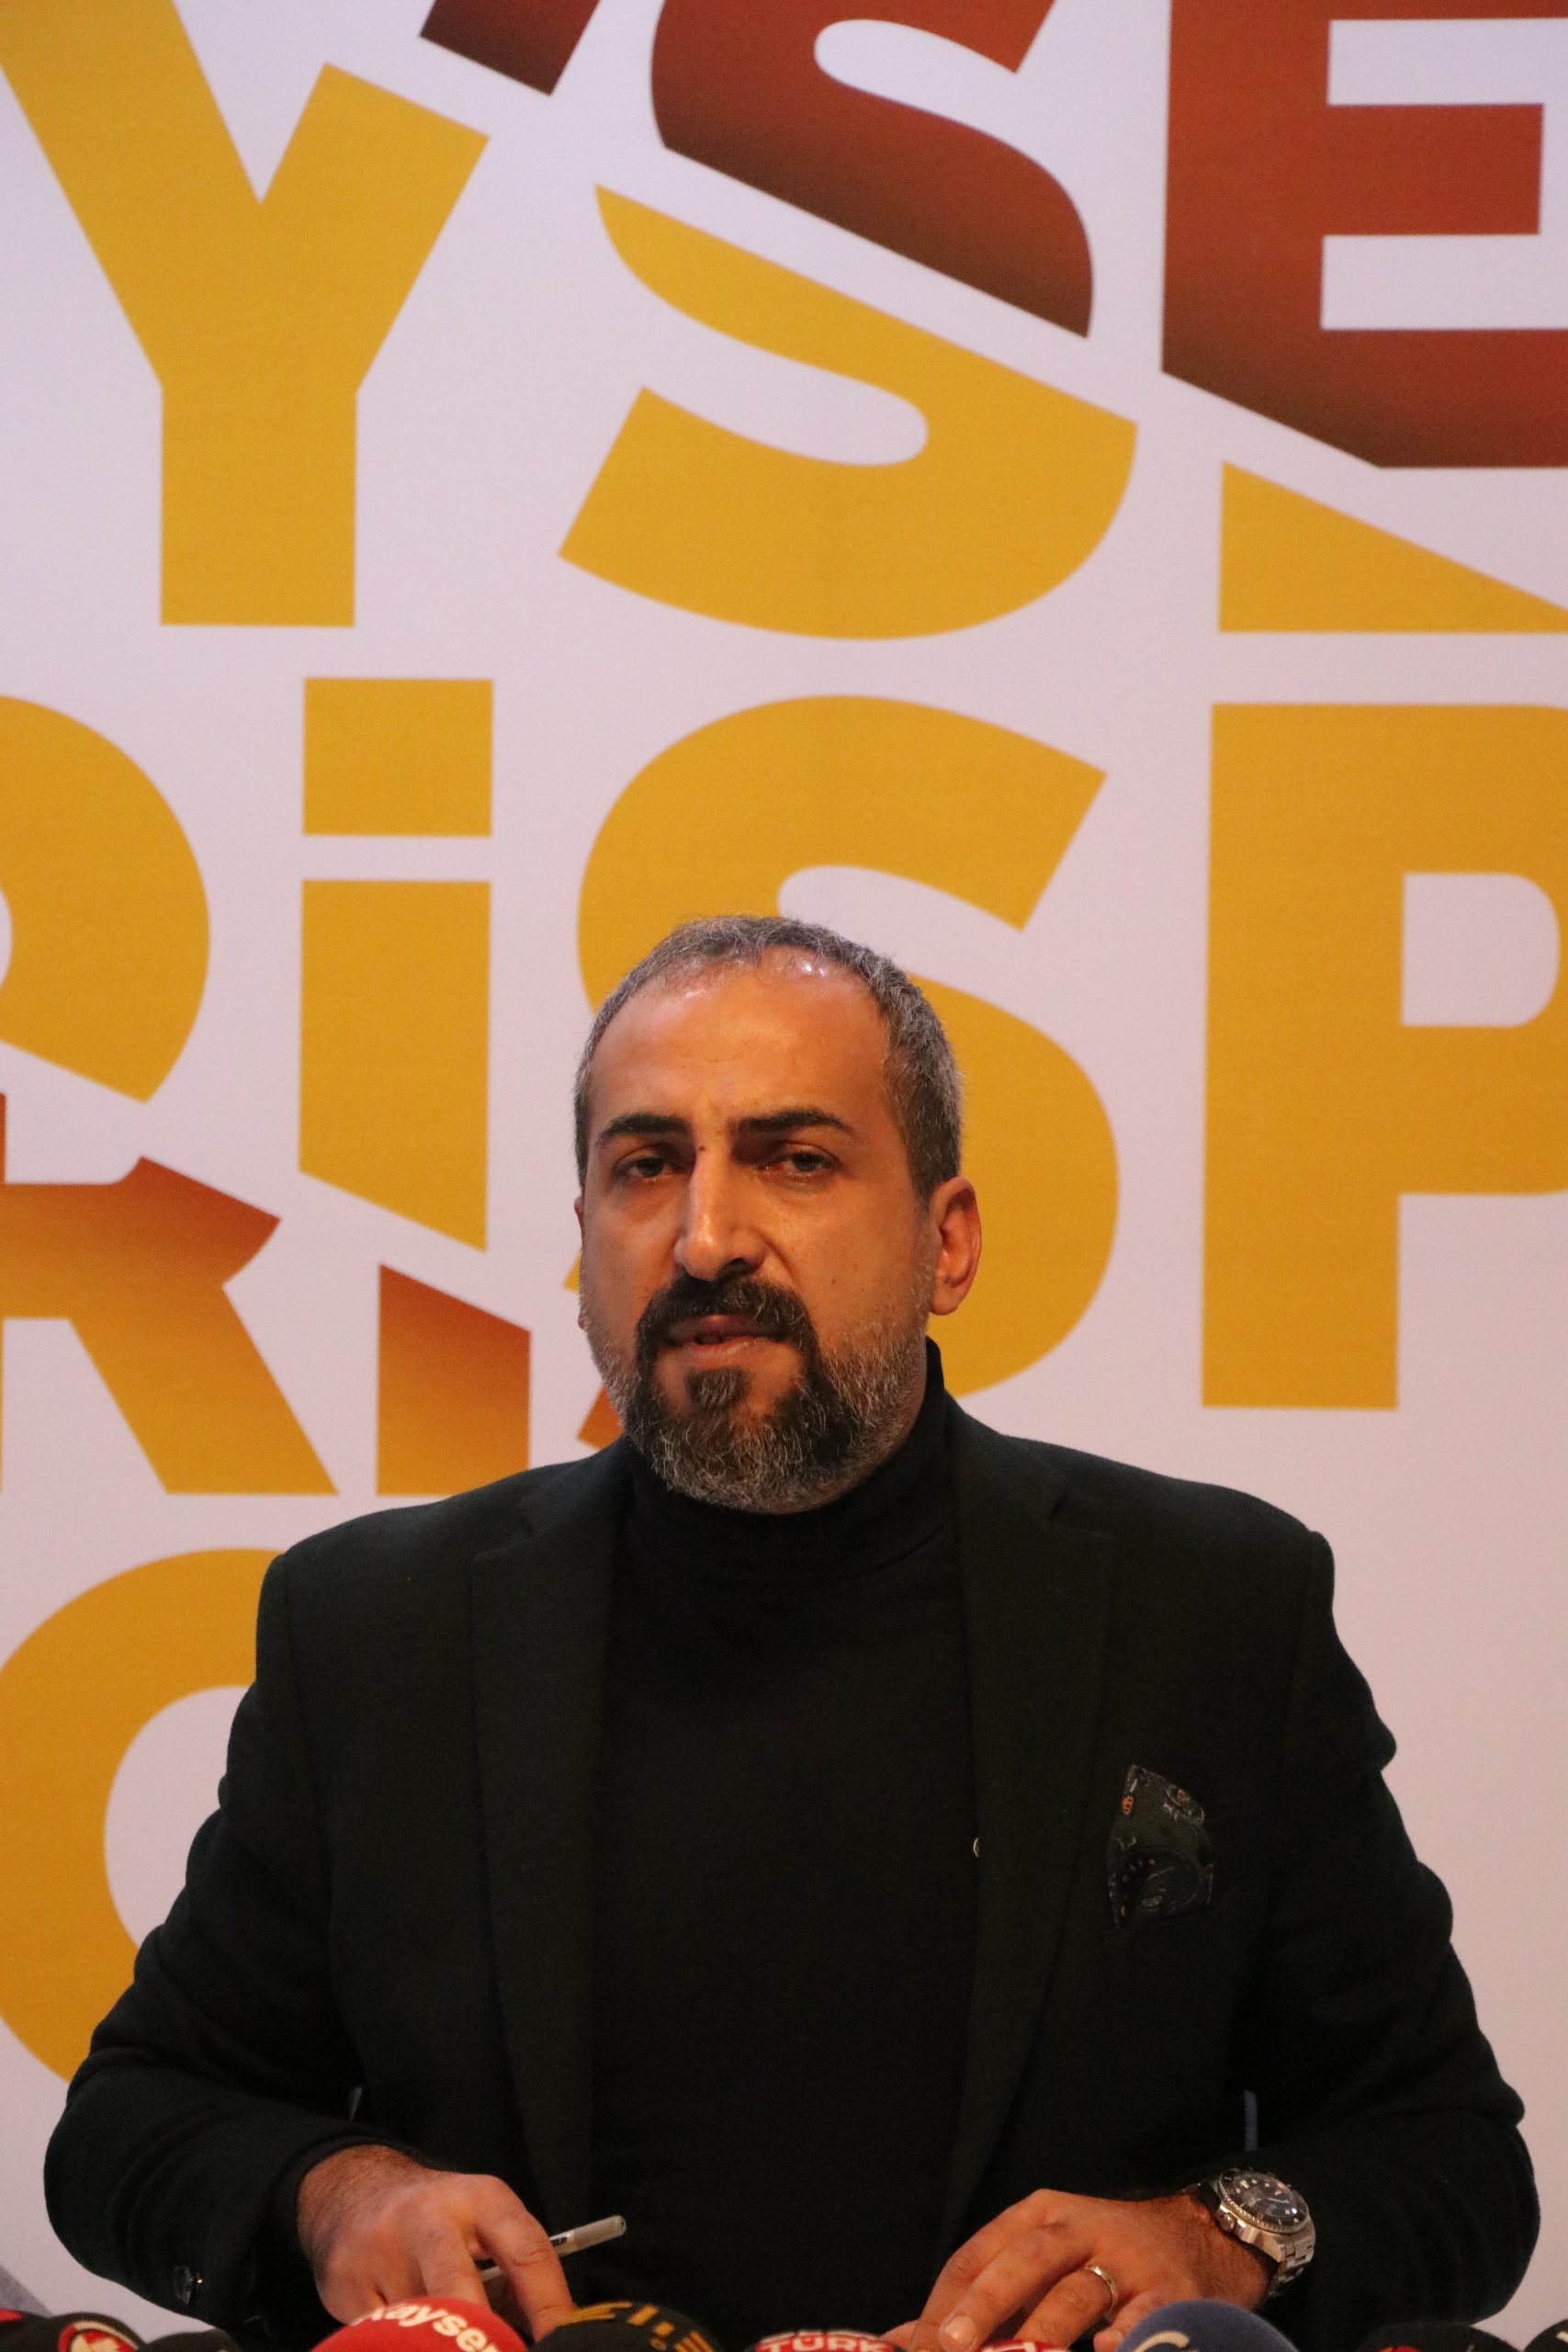 Kayserispor Asbaşkanı Mustafa Tokgöz: “Elinizi Kayserispor’dan çekin”